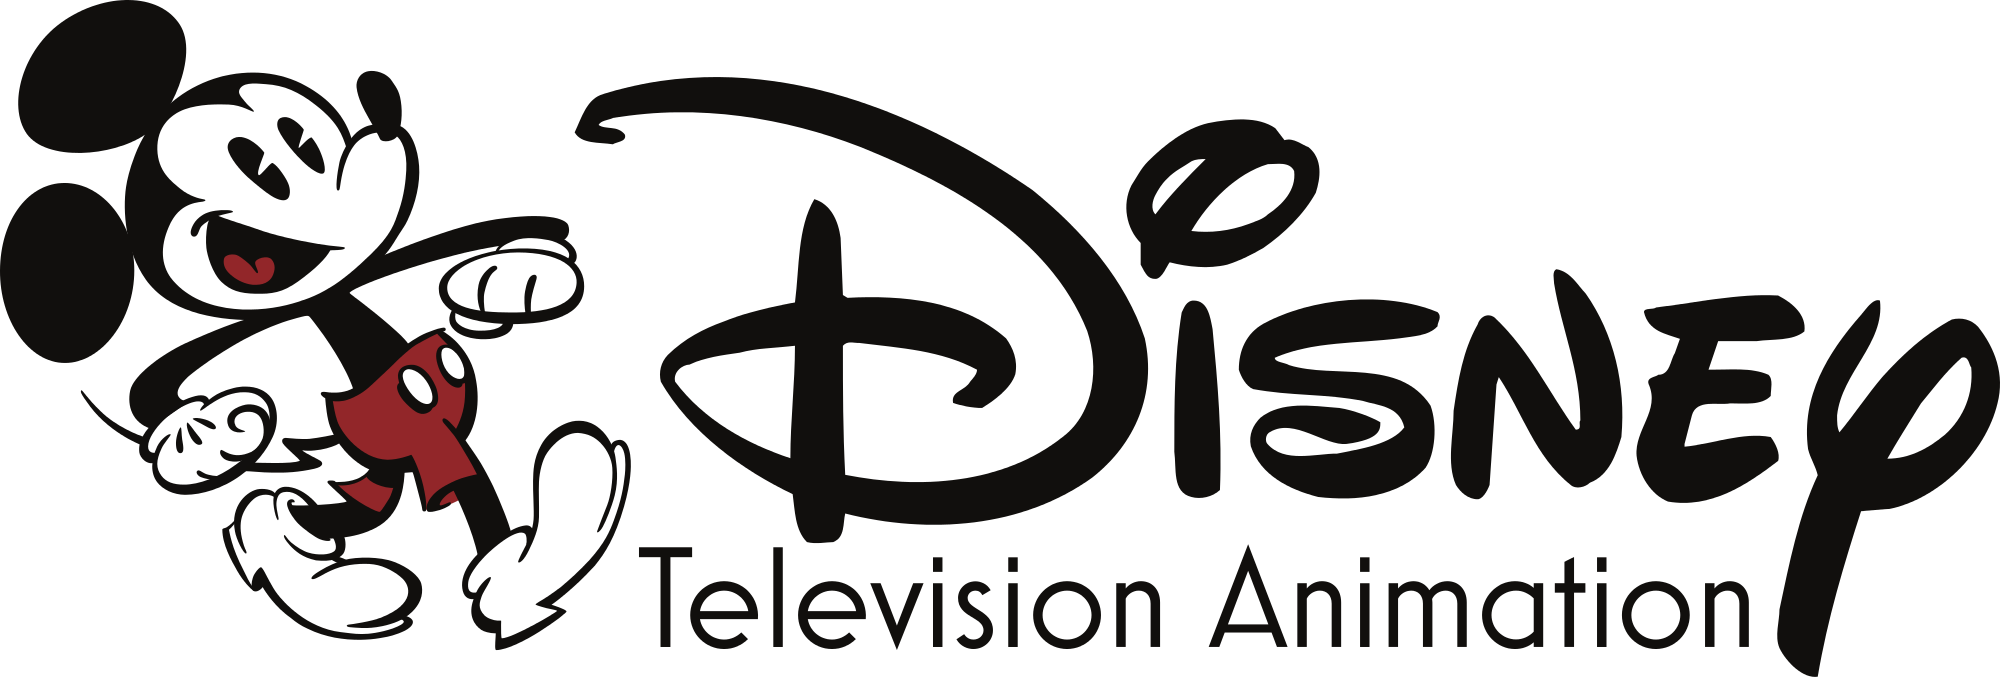 Resultado de imagen de Disney Television Animation